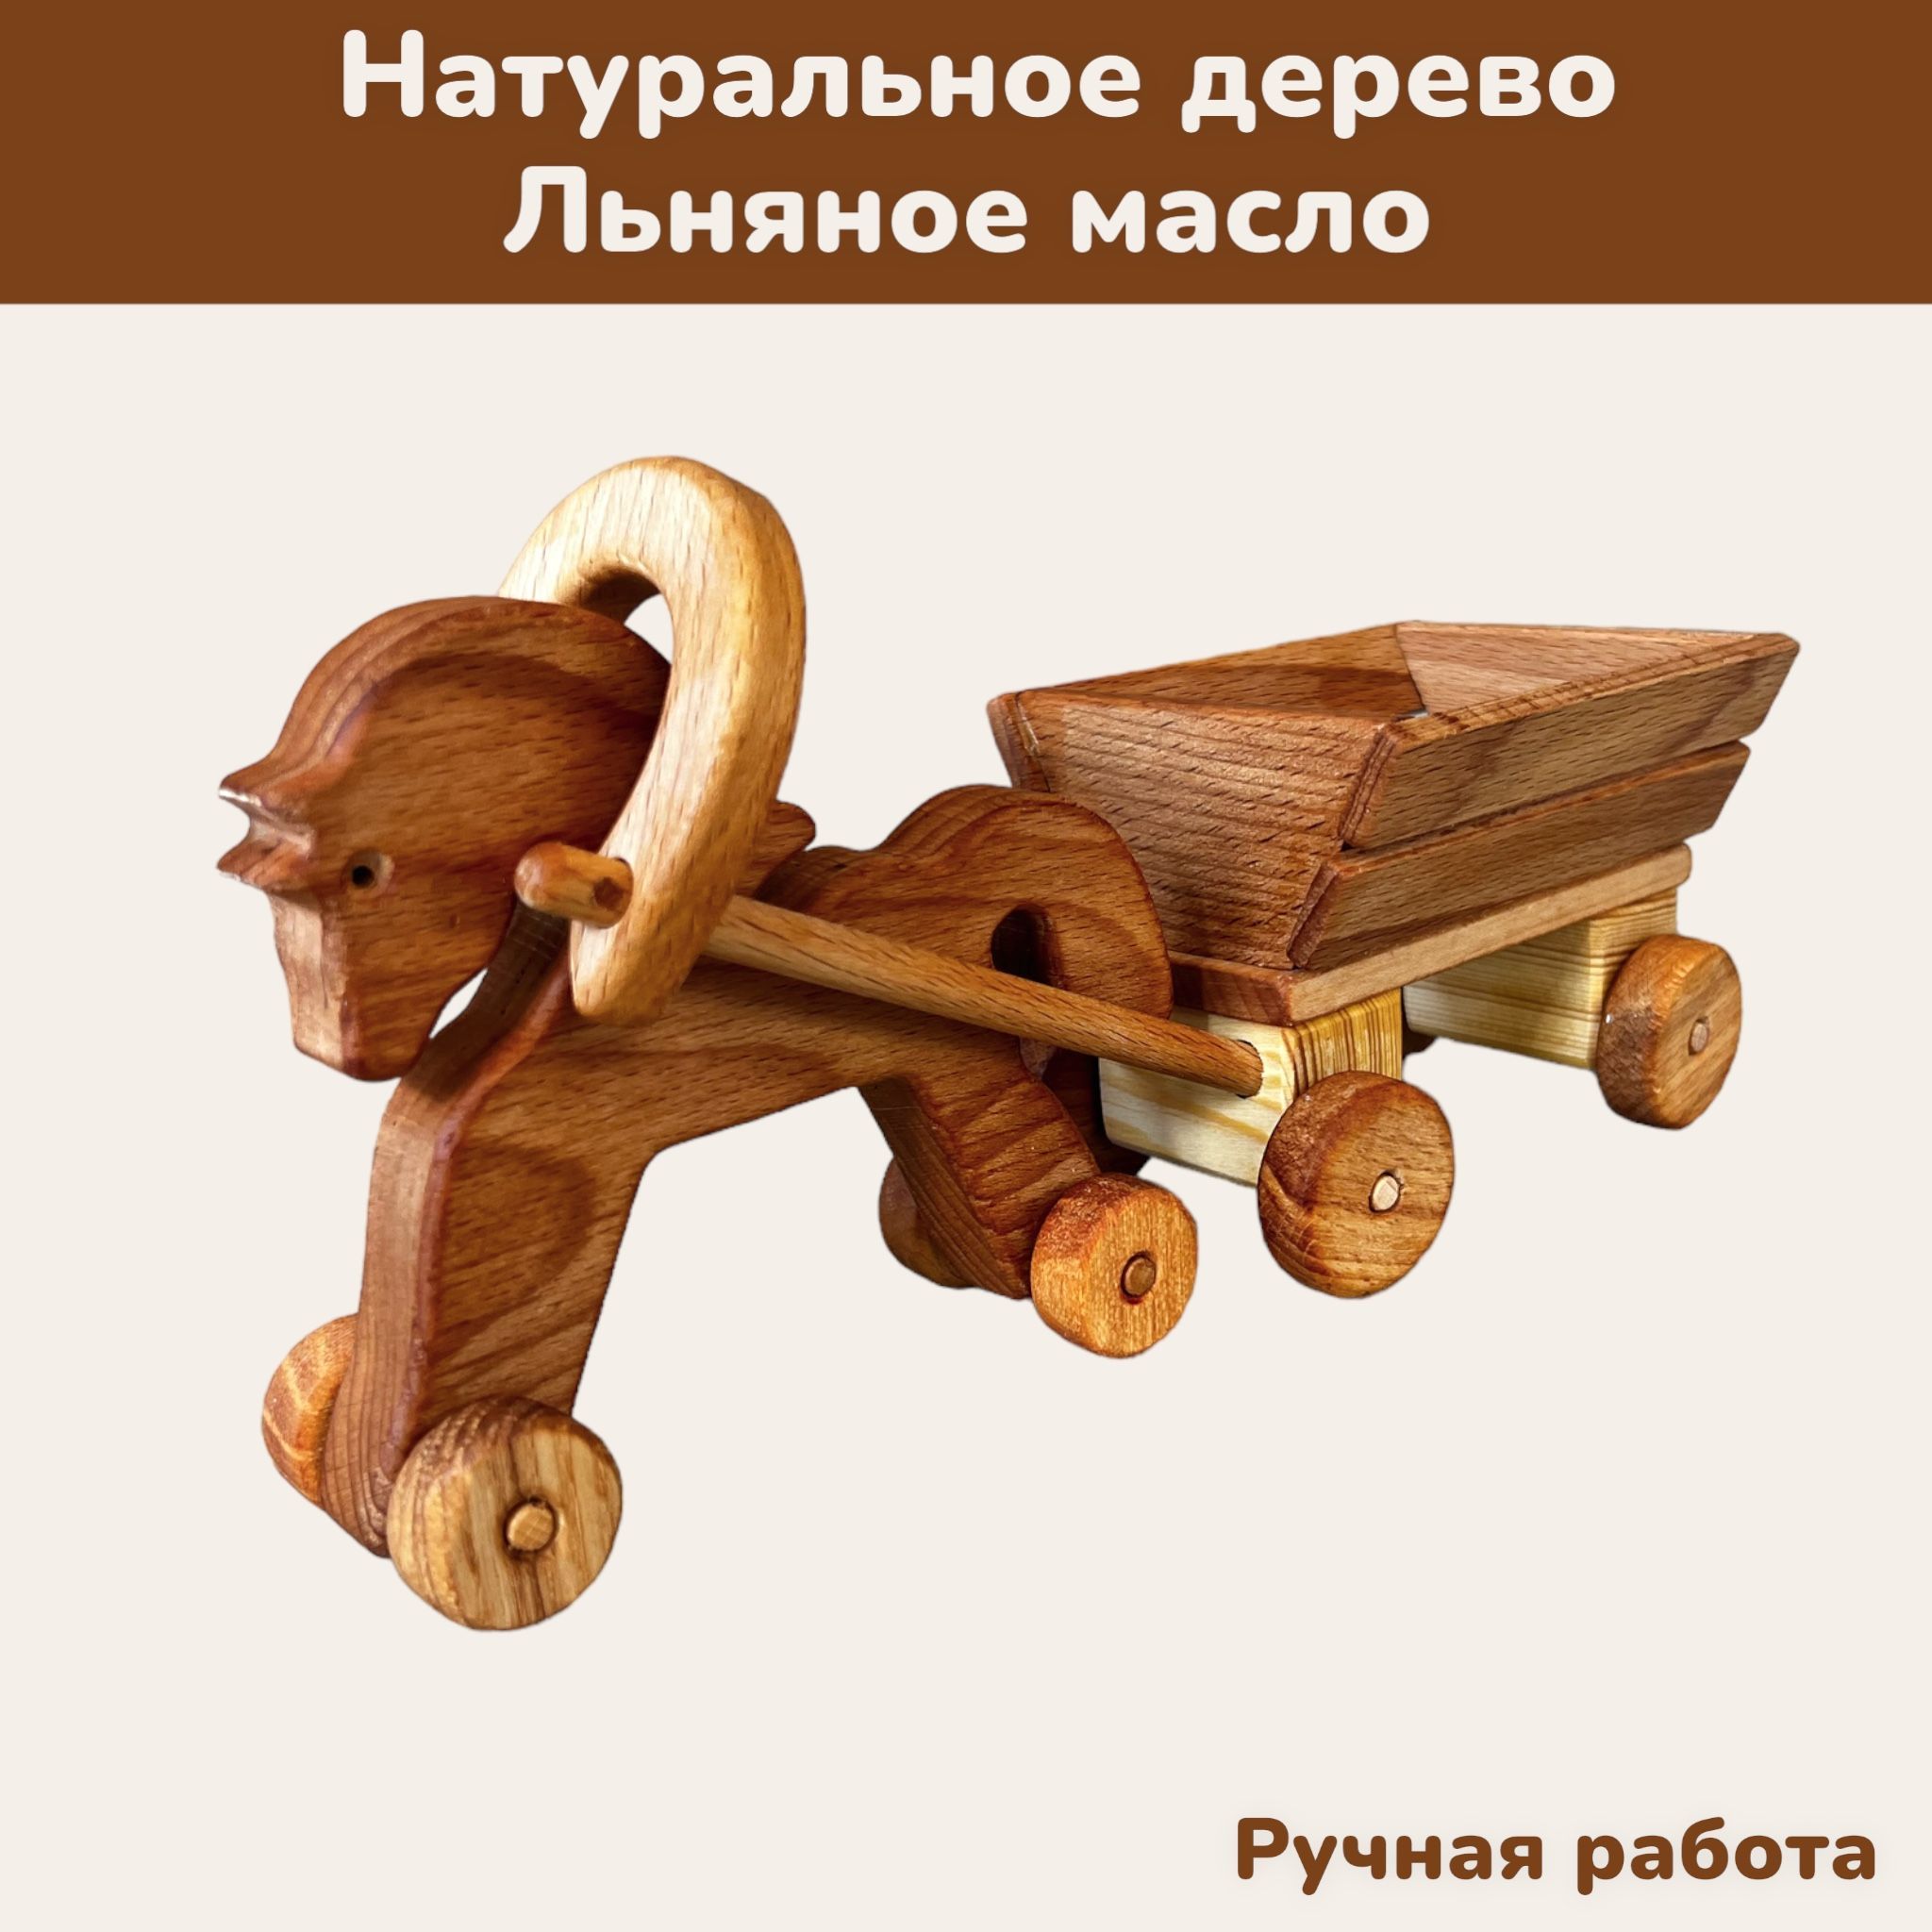 Достоинства деревянных игрушек